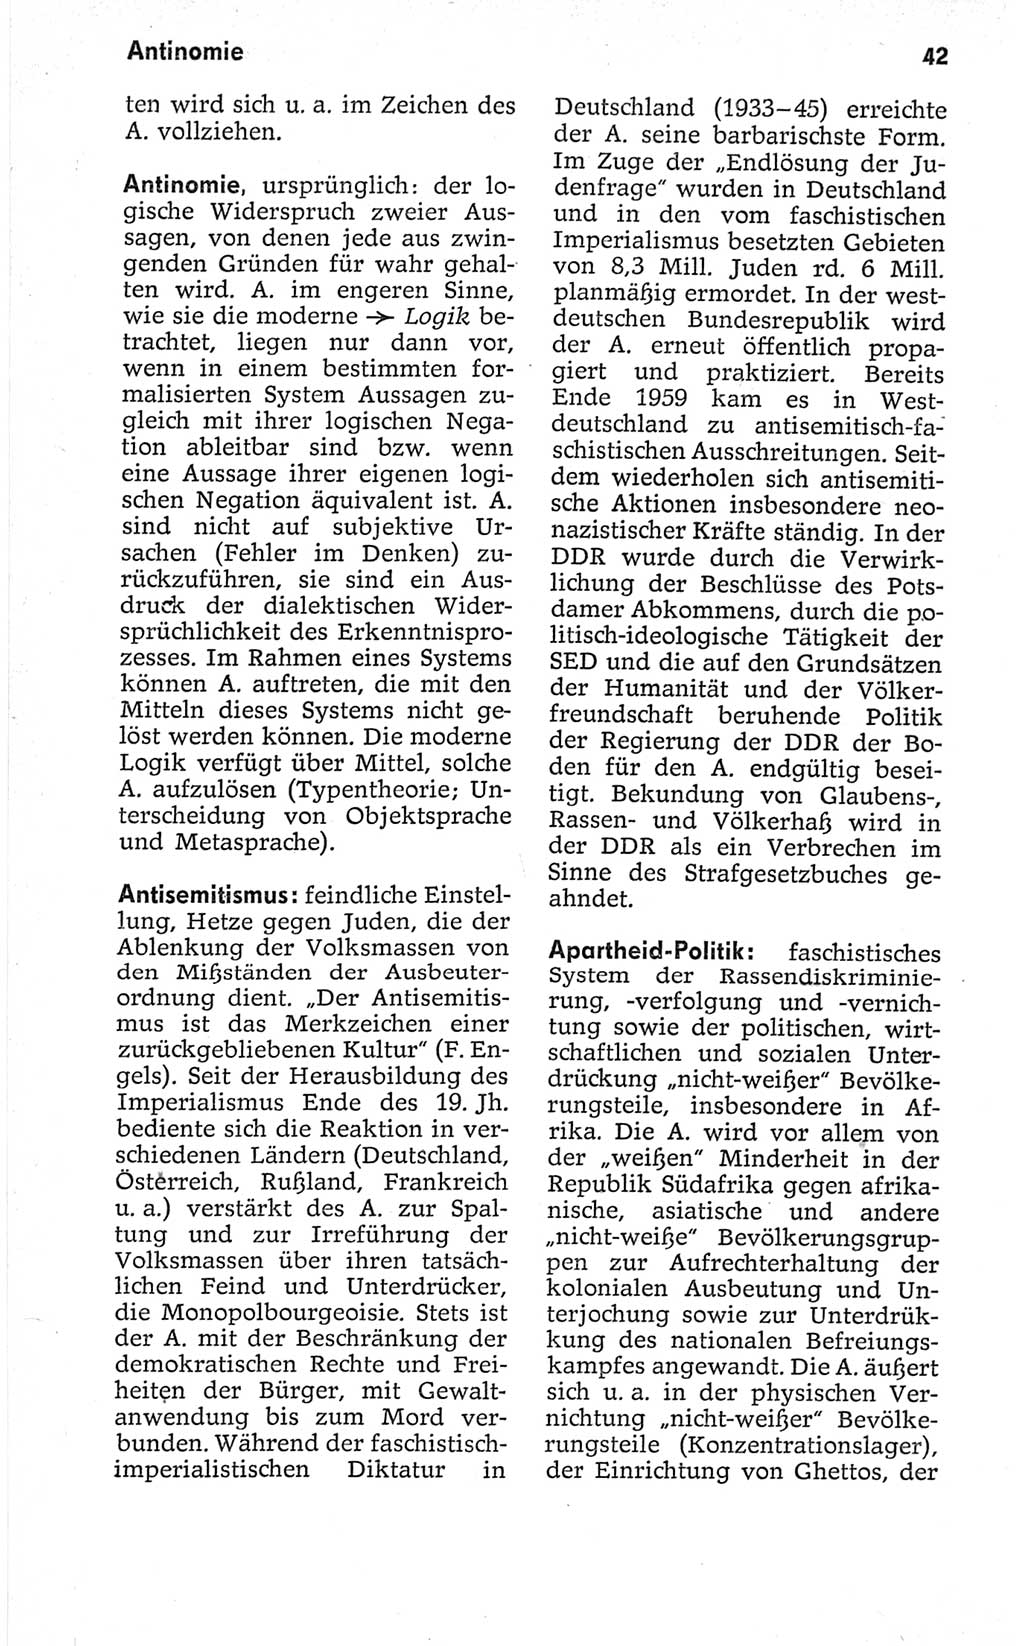 Kleines politisches Wörterbuch [Deutsche Demokratische Republik (DDR)] 1967, Seite 42 (Kl. pol. Wb. DDR 1967, S. 42)